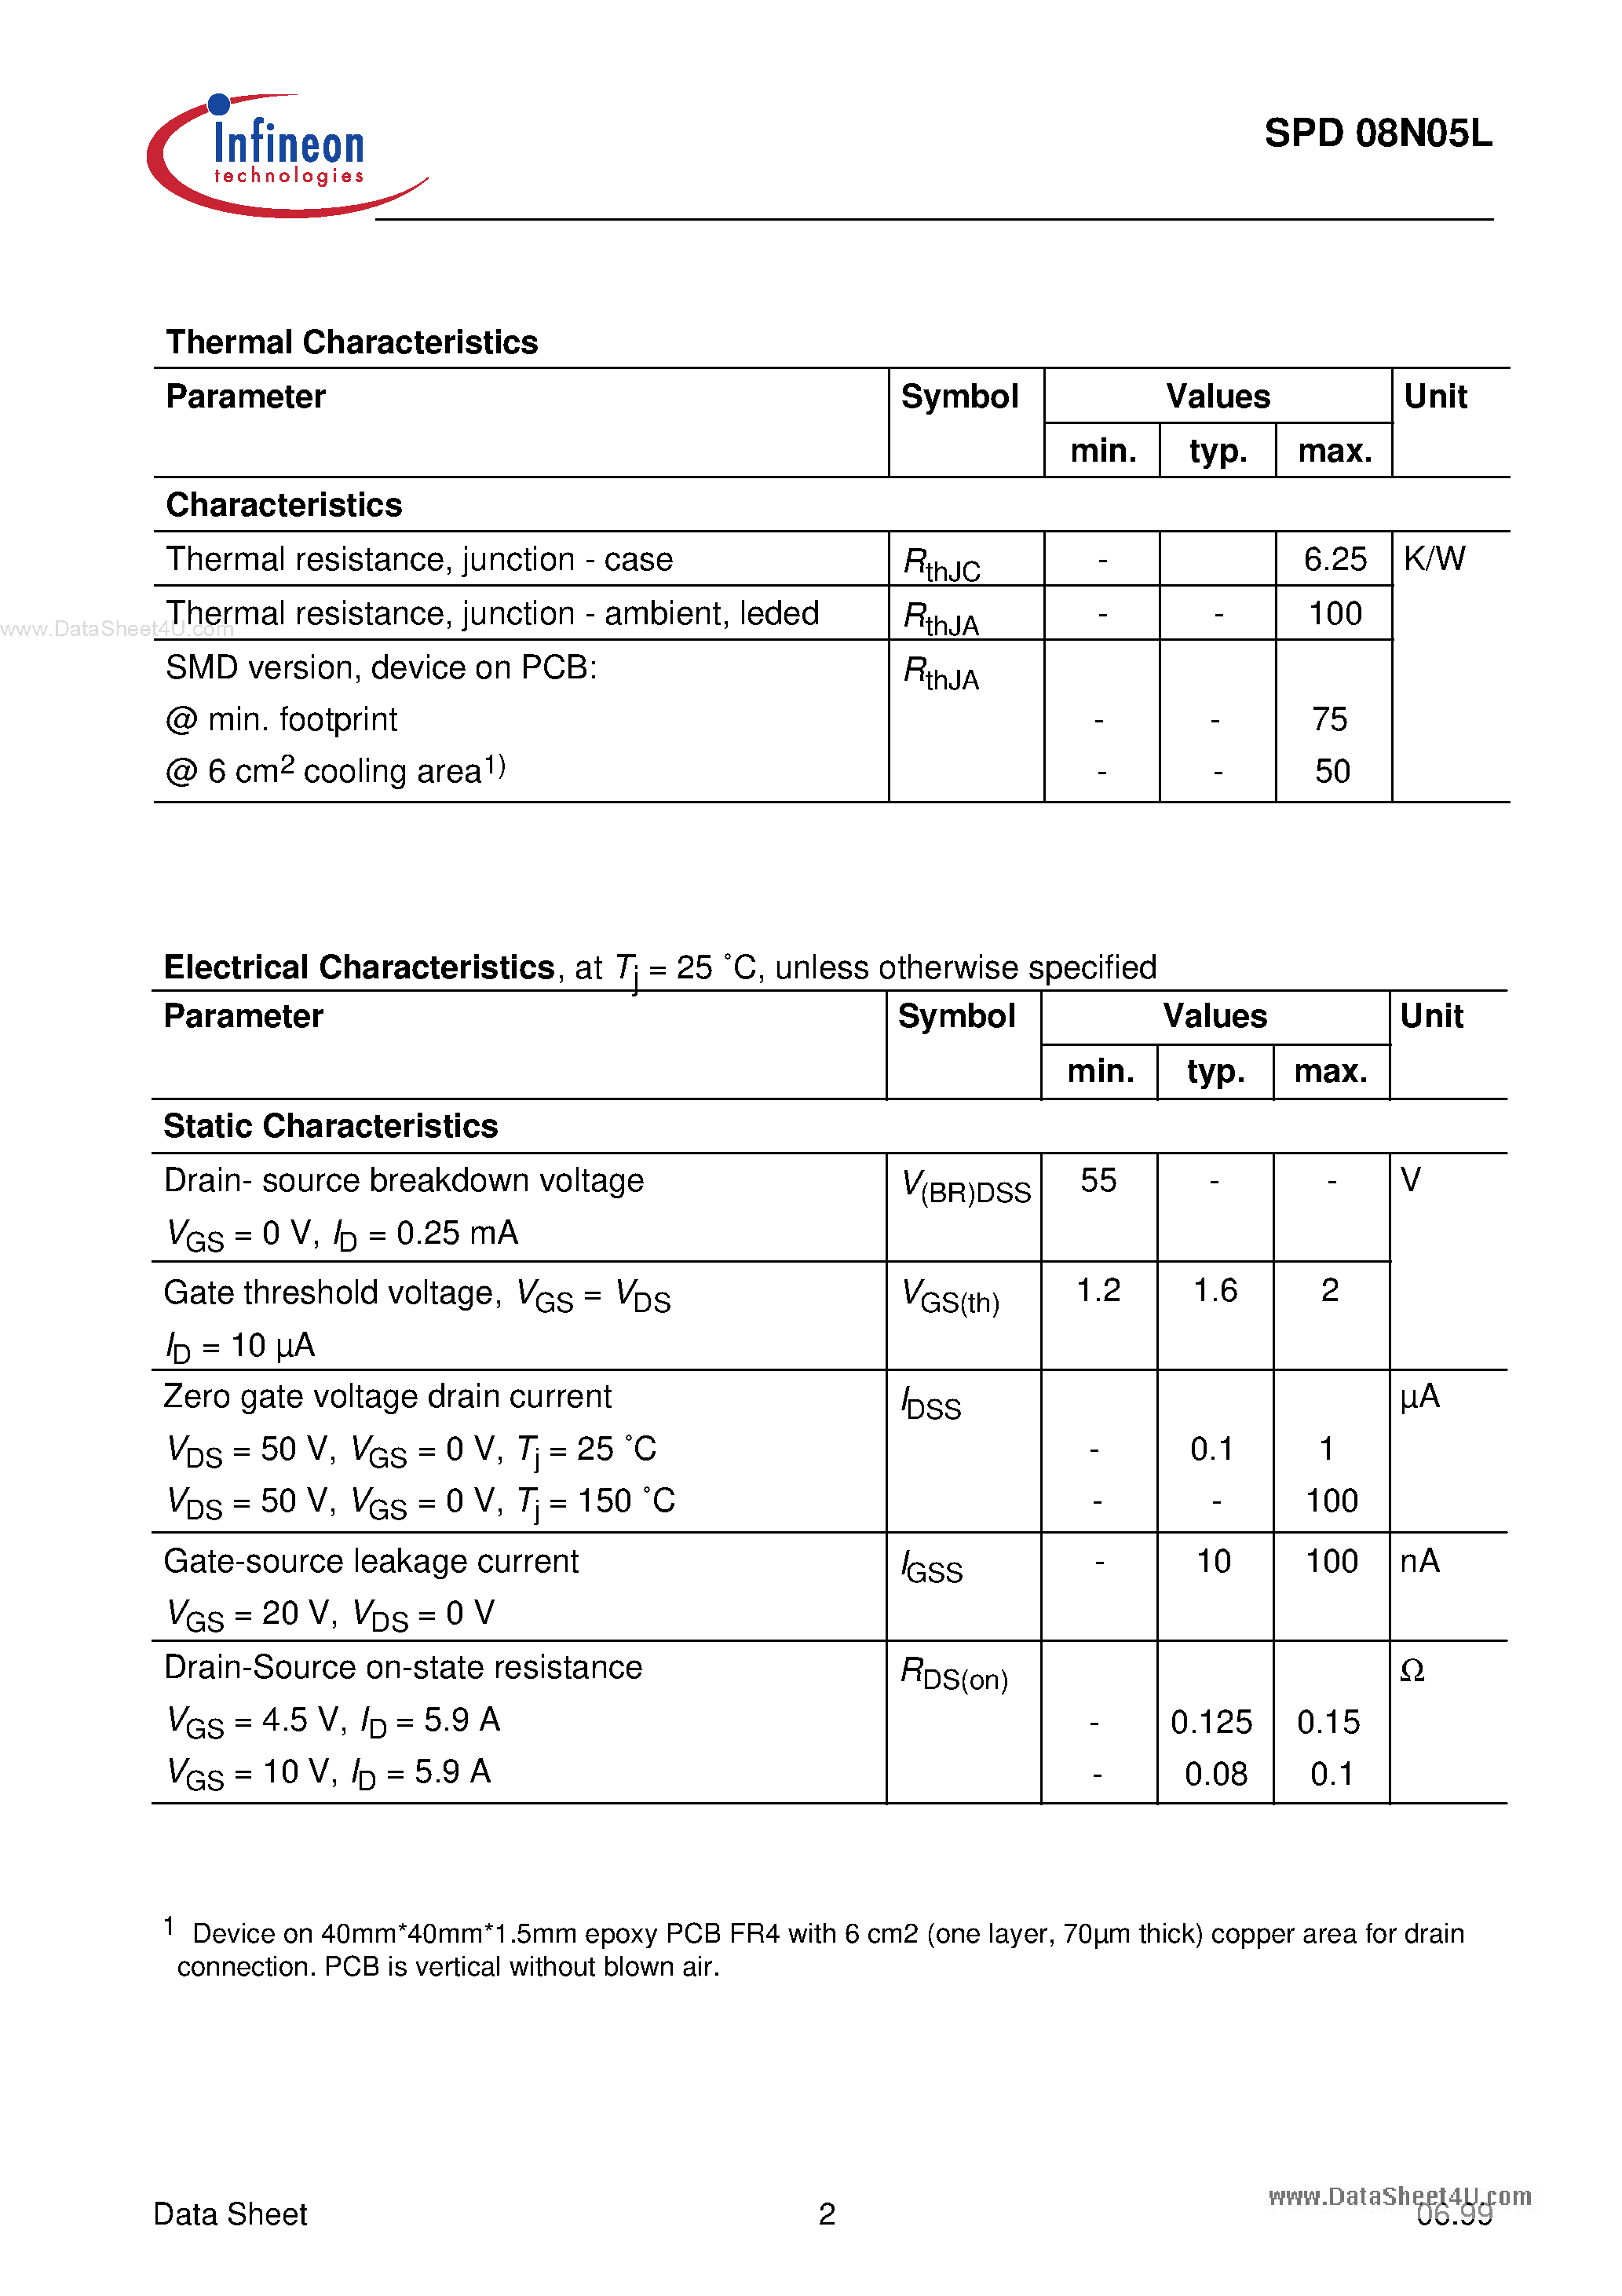 Datasheet SPU08N05L - SIPMOS-R POWER TRANSISTOR page 2